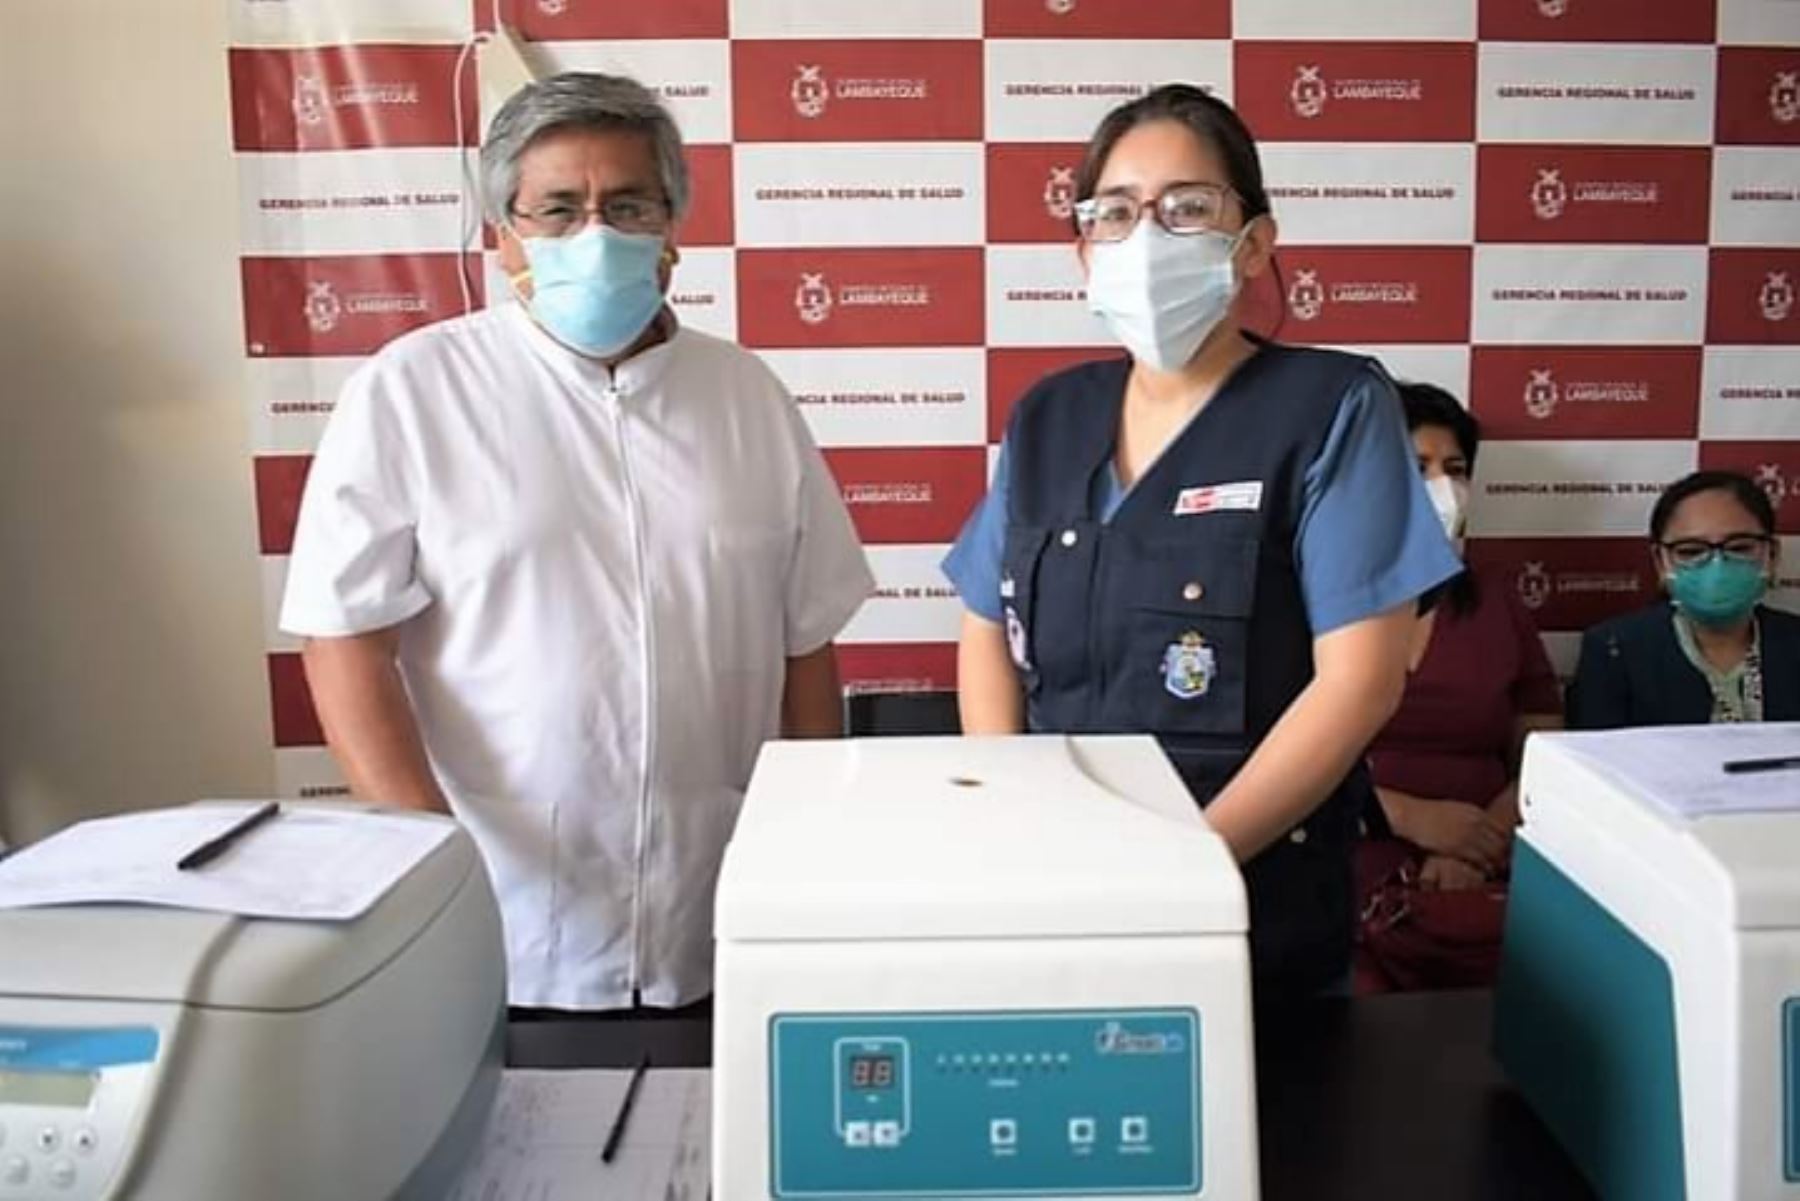 Gerencia Regional de Salud de Lambayeque adquirió equipos de laboratorio para reforzar atención en las redes provinciales. Foto: ANDINA/Difusión